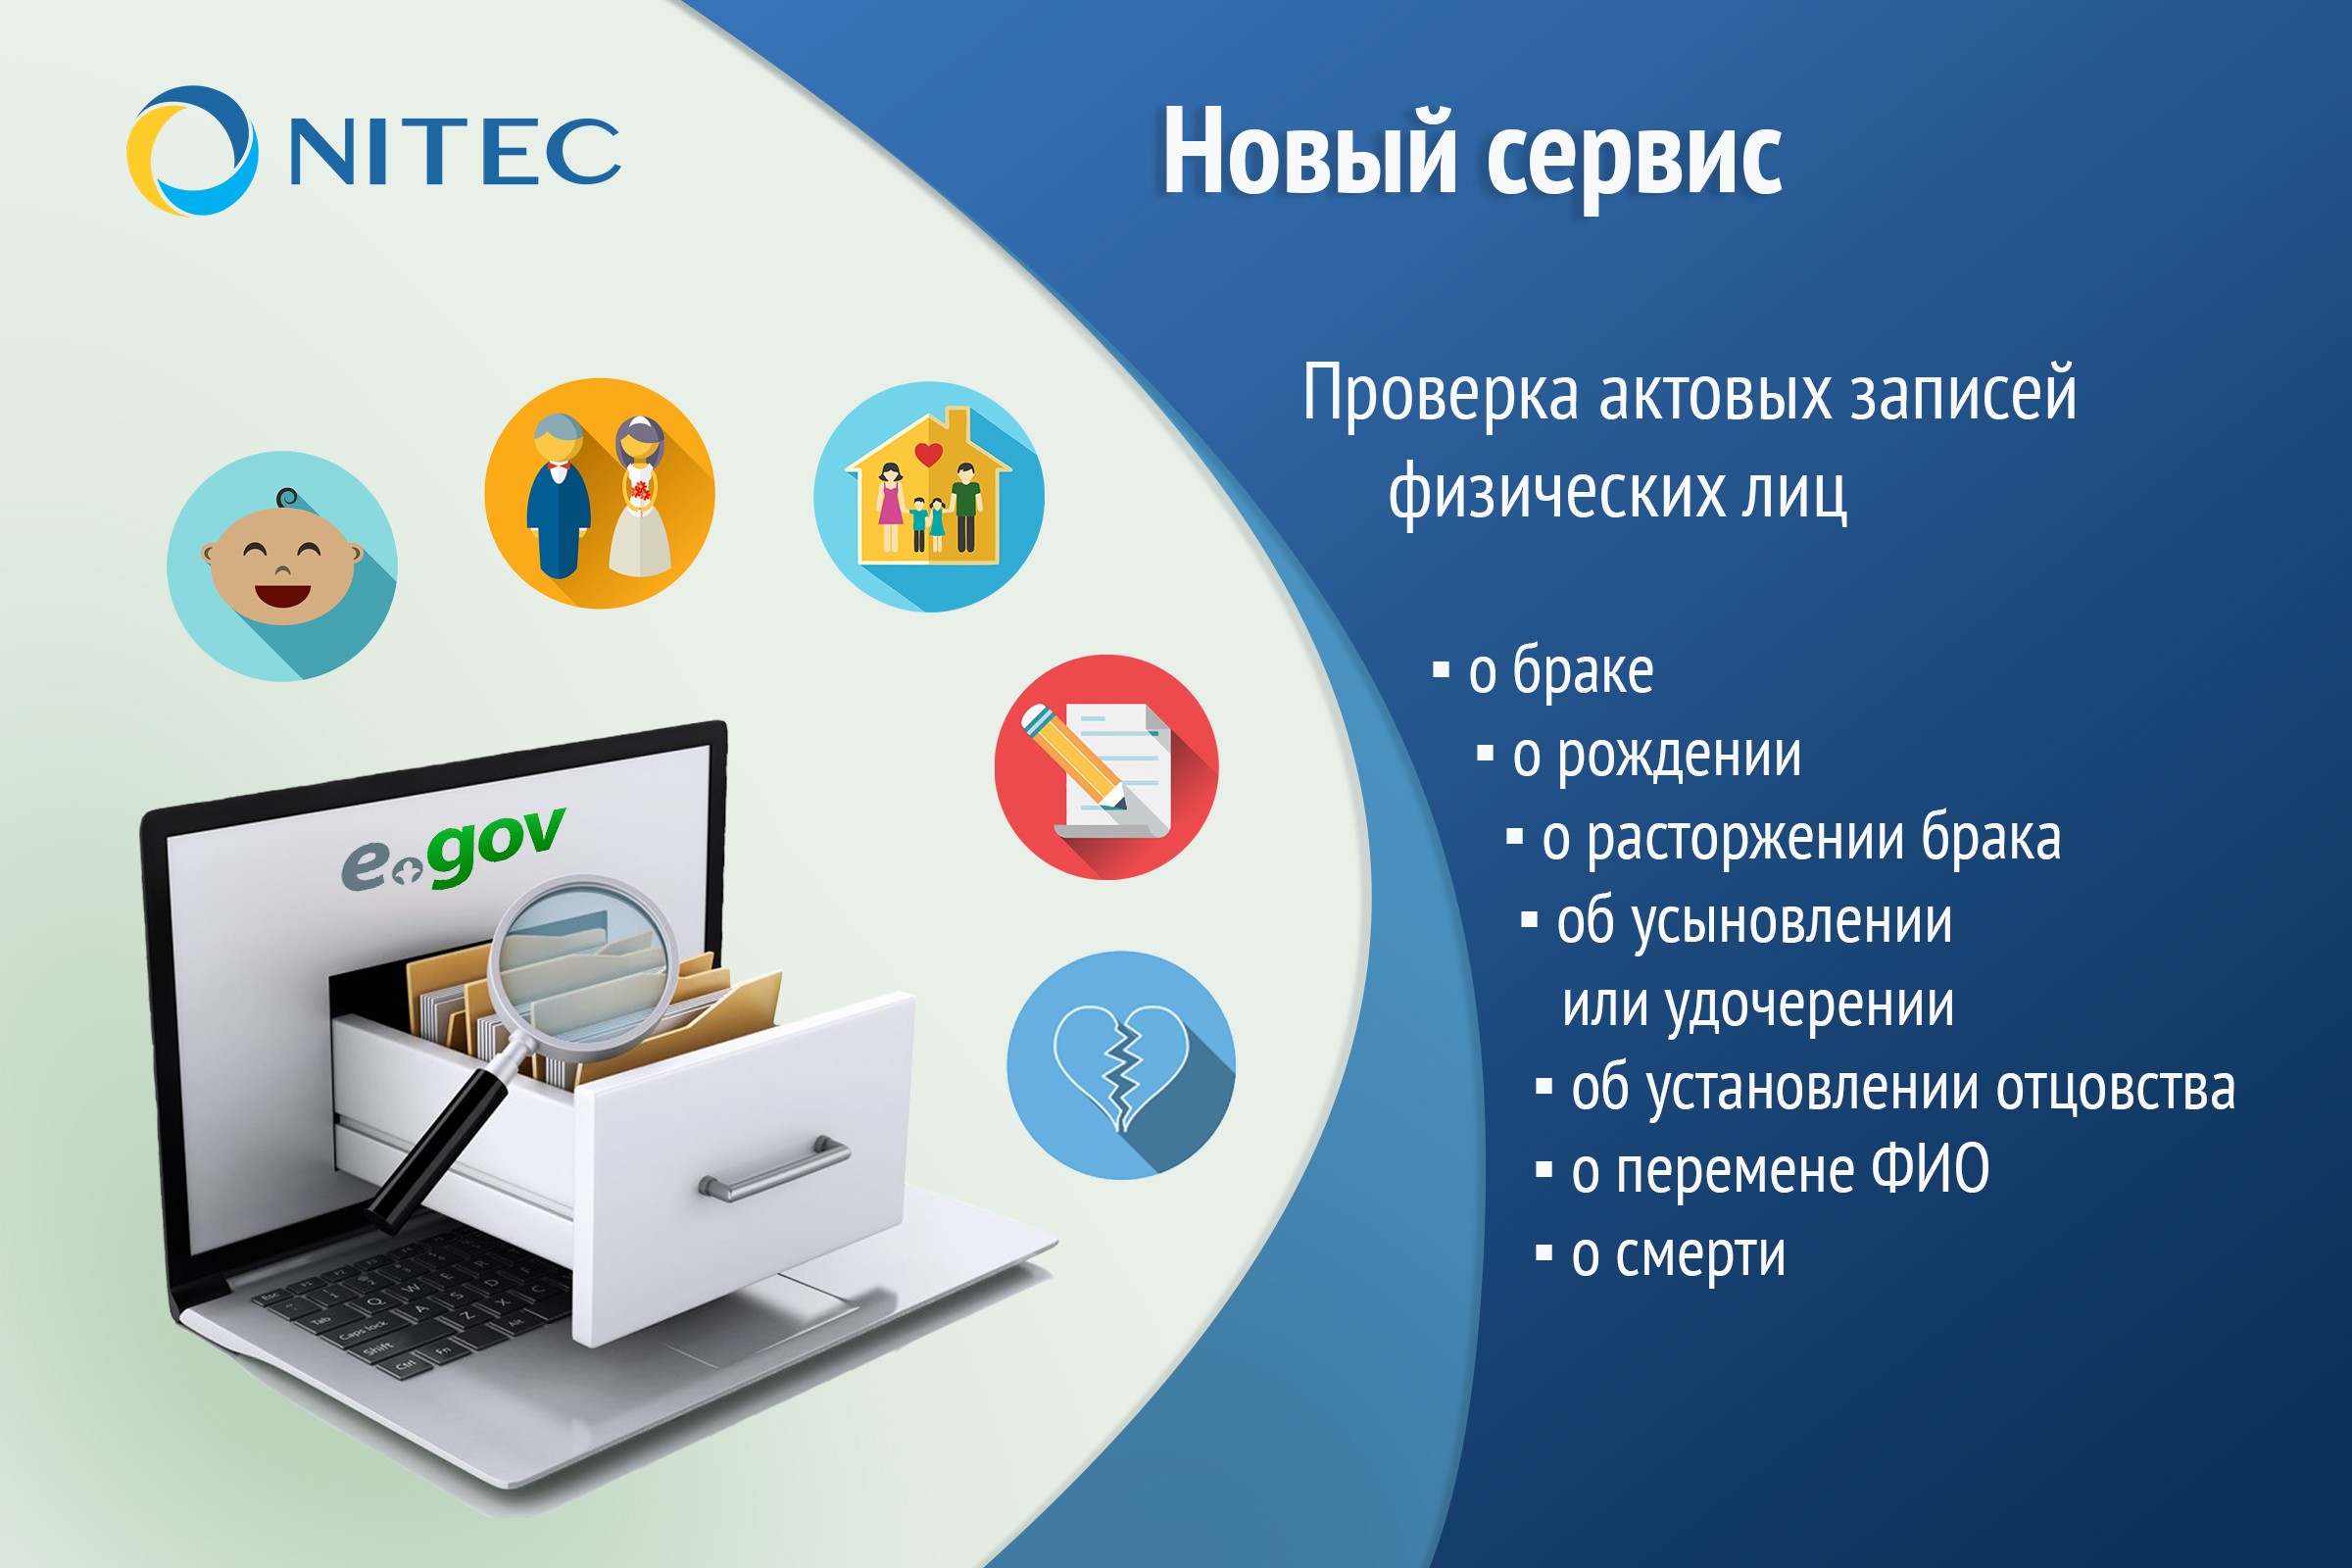 Электронный портал казахстана. Егов. Егов кз. Государственные услуги РК. Уголок самообслуживания EGOV.